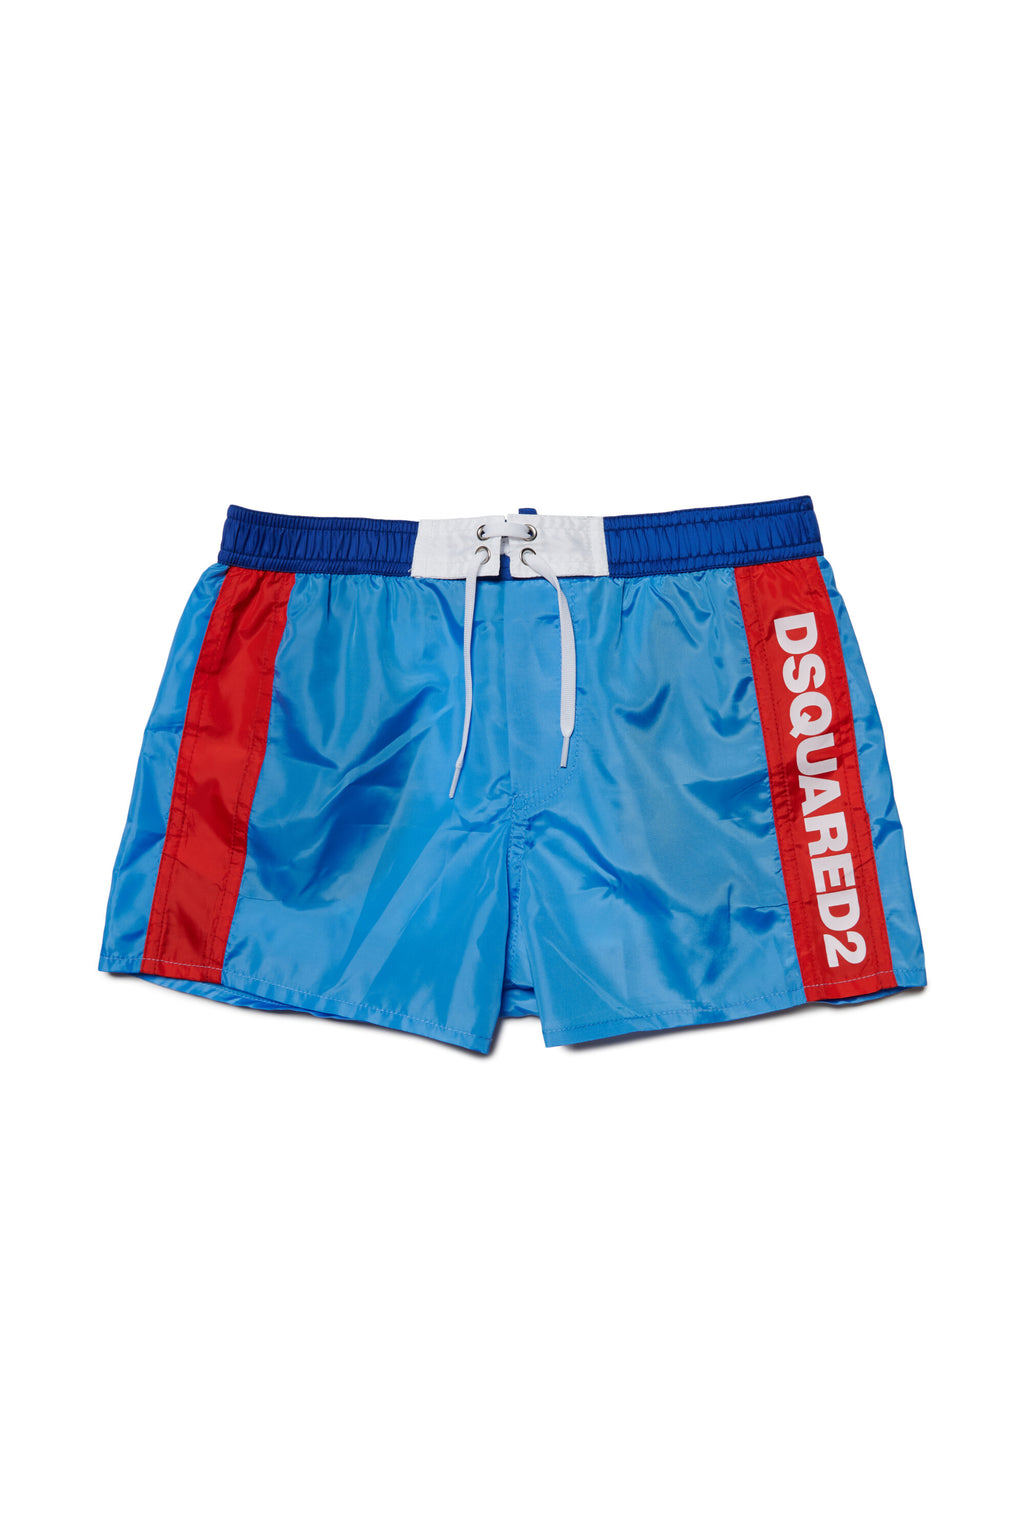 Colorblock boxer swimsuit